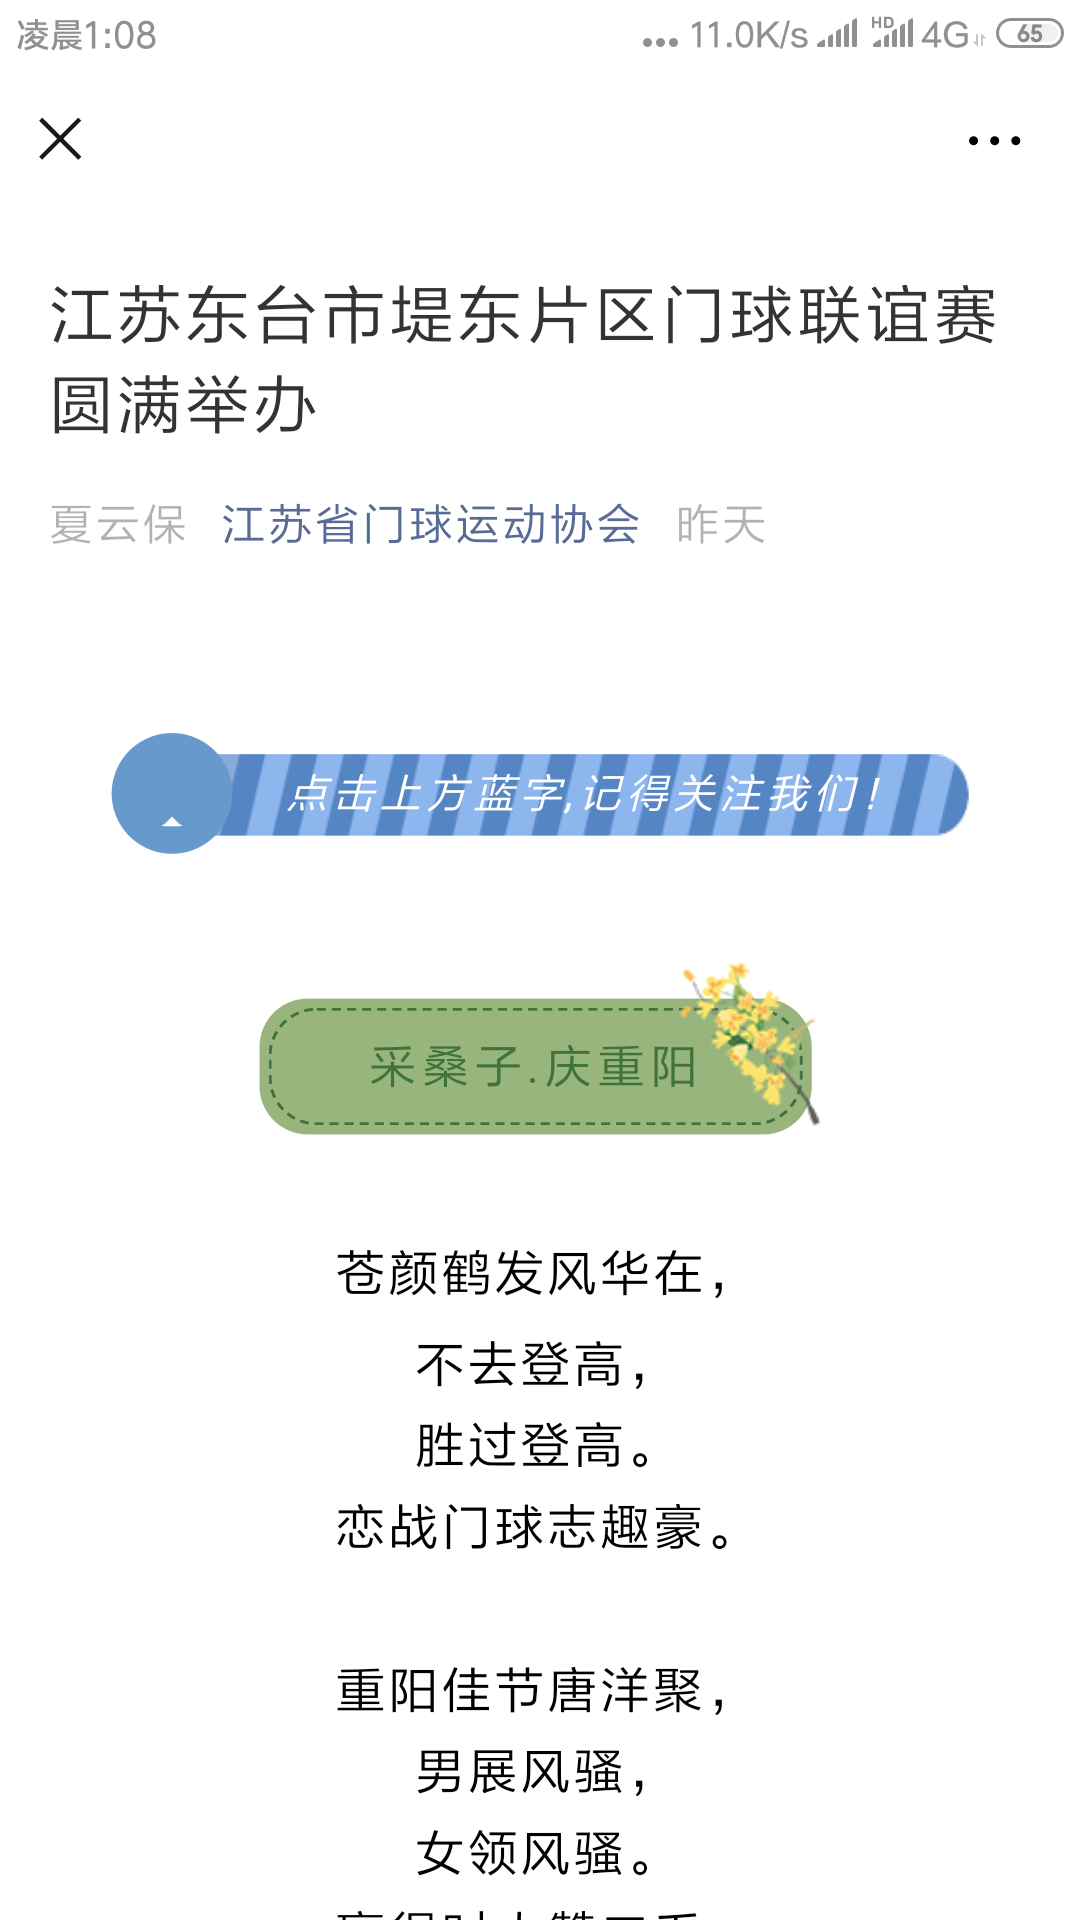 Screenshot_2019-10-08-01-08-20-379_com.tencent.mm.png